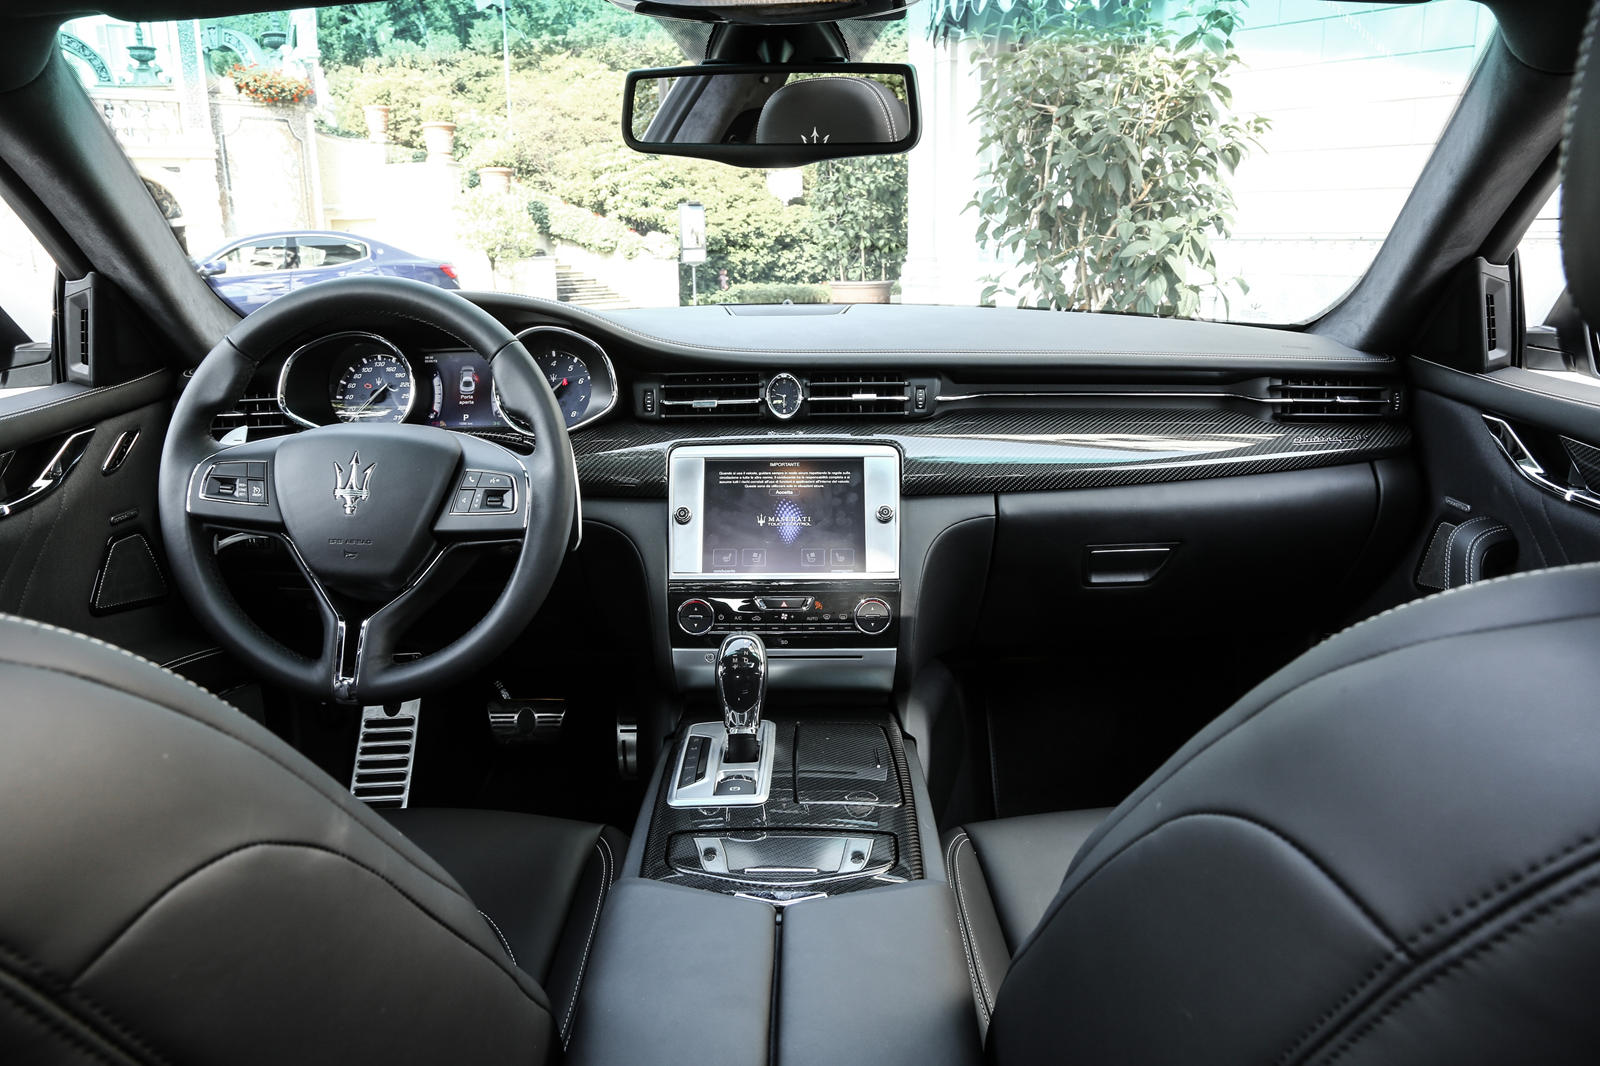 2016 Maserati Quattroporte Dashboard